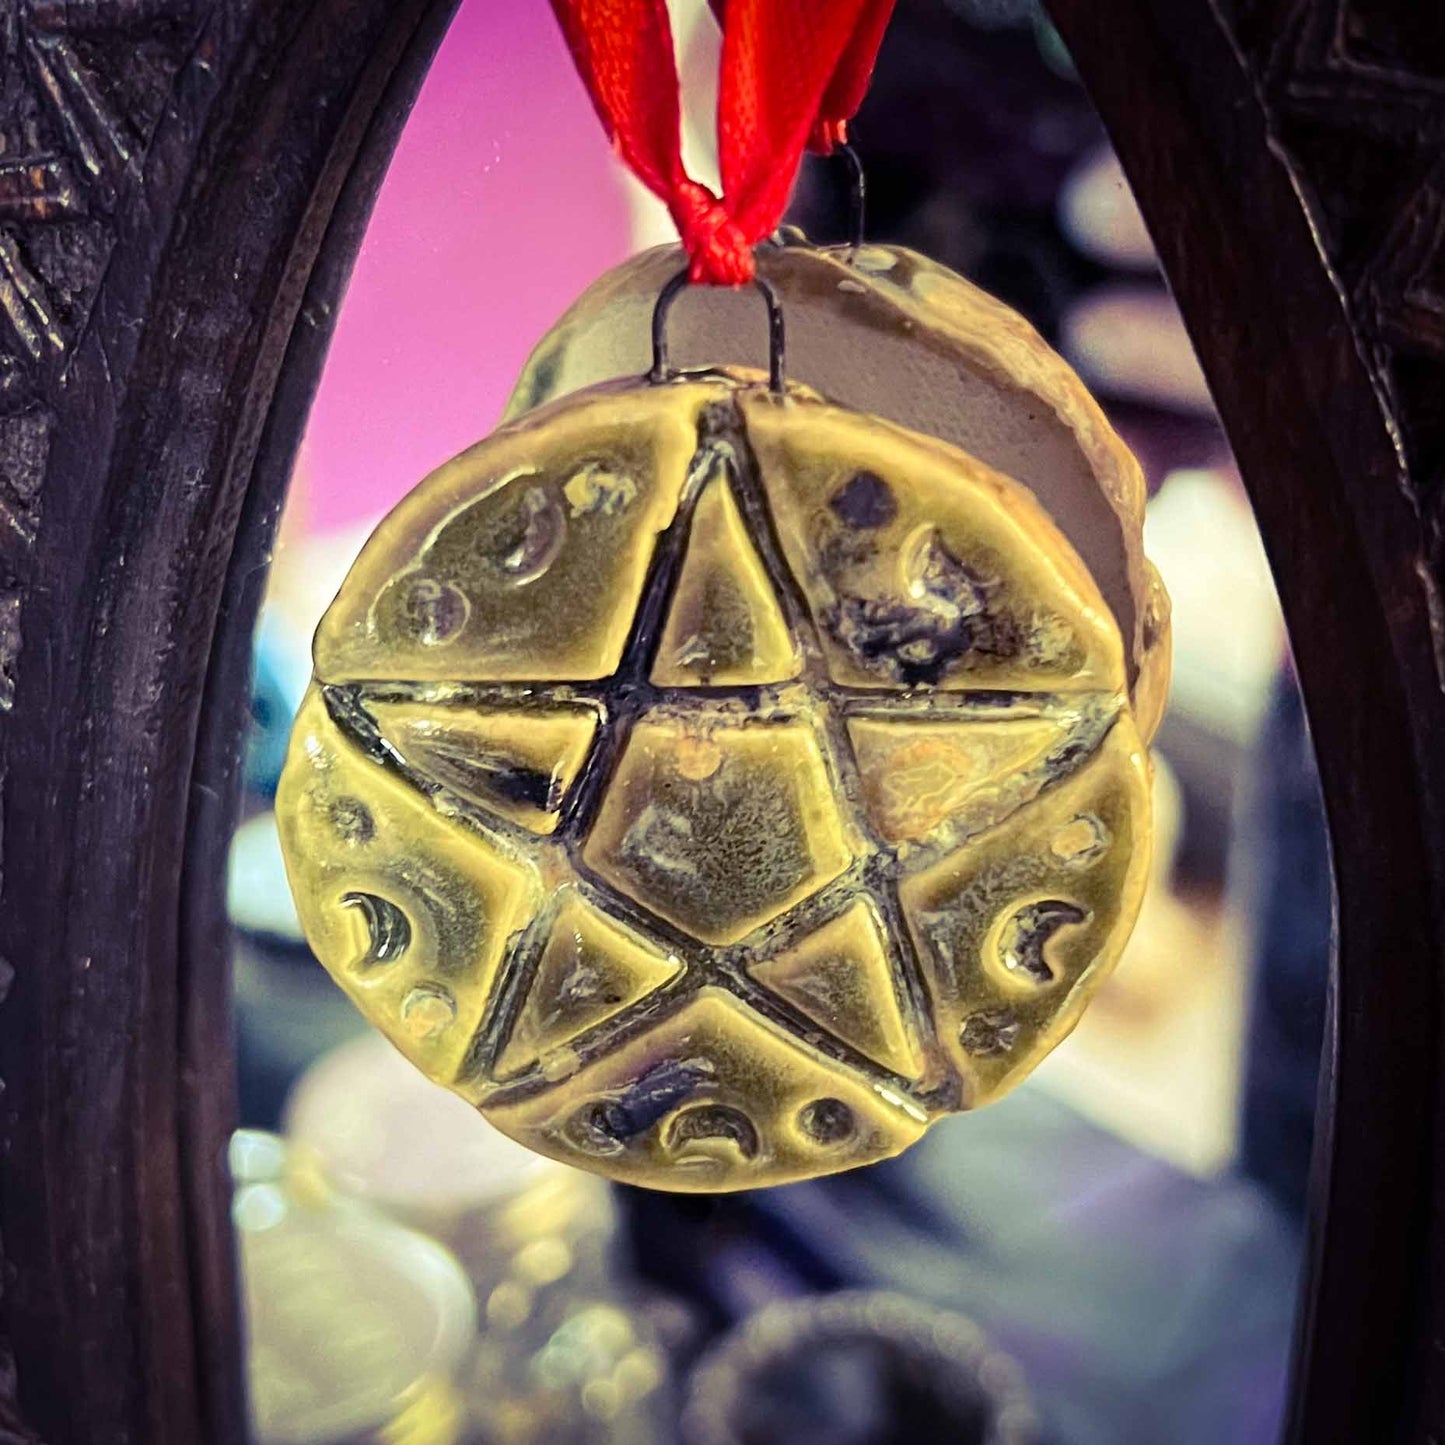 pentagram ornament; ceramic; altar decor; pagan; witchy; one of a kind; Melasdesign; Thomas WV